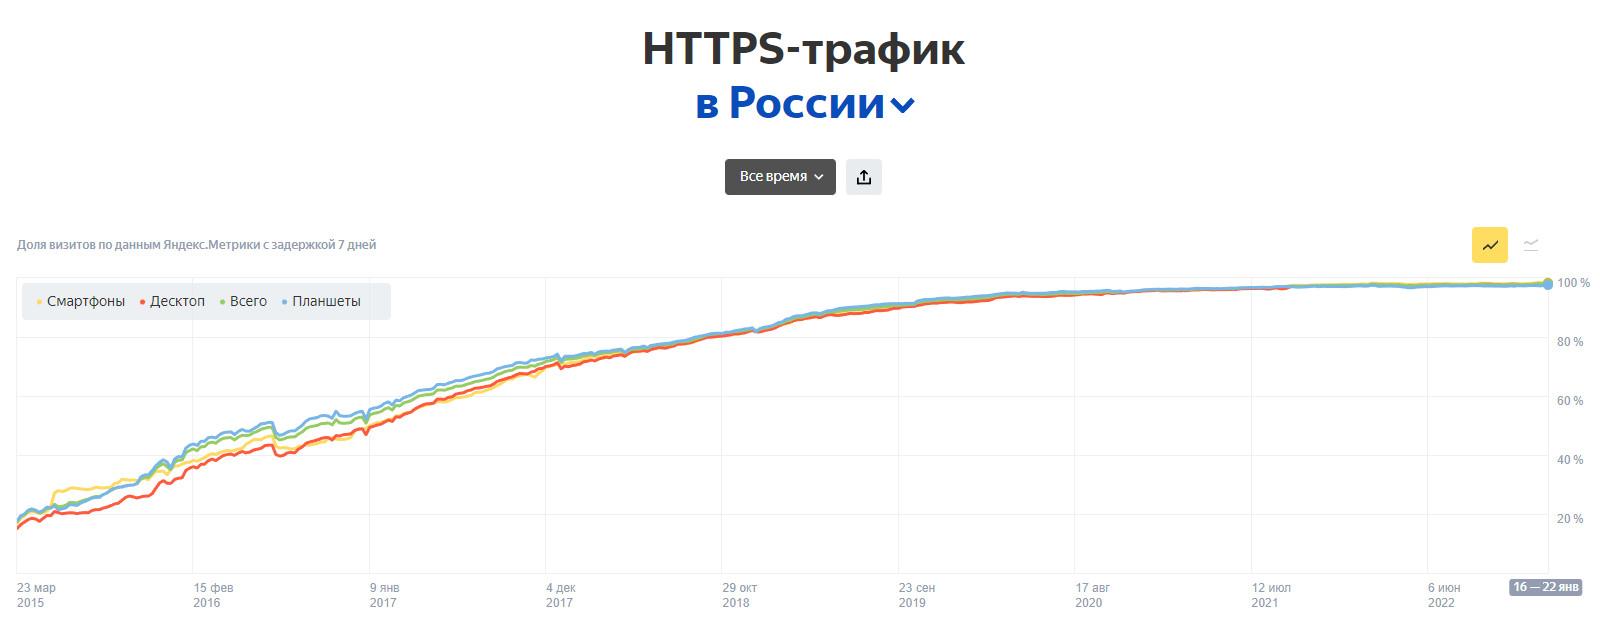 Доля HTTPS трафика в России в 2023 году